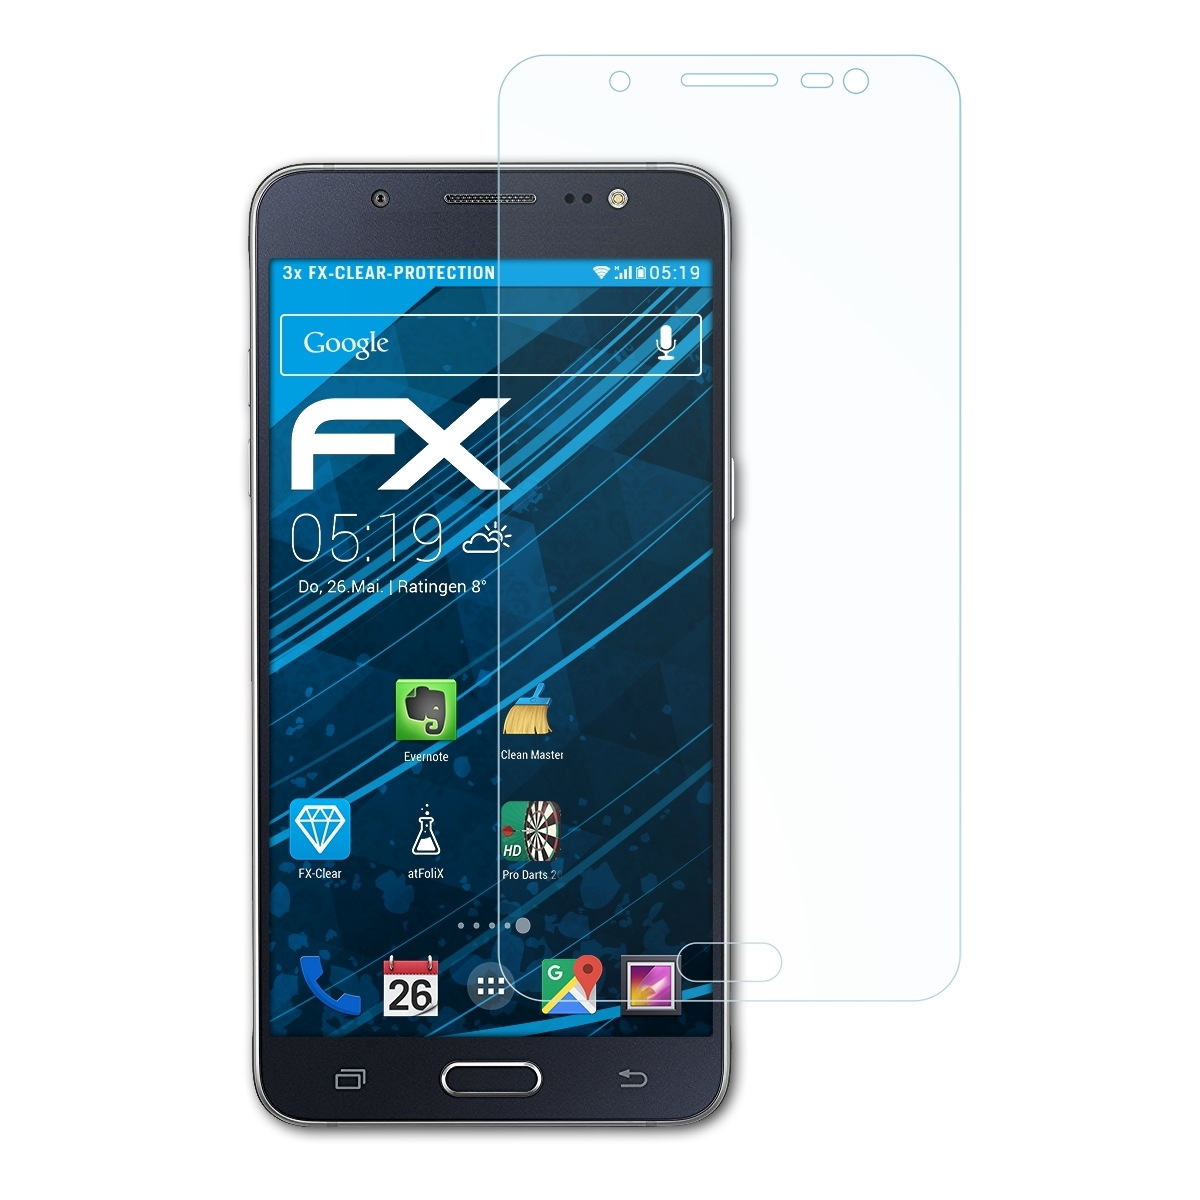 ATFOLIX 3x (2016)) J5 Samsung Displayschutz(für FX-Clear Galaxy